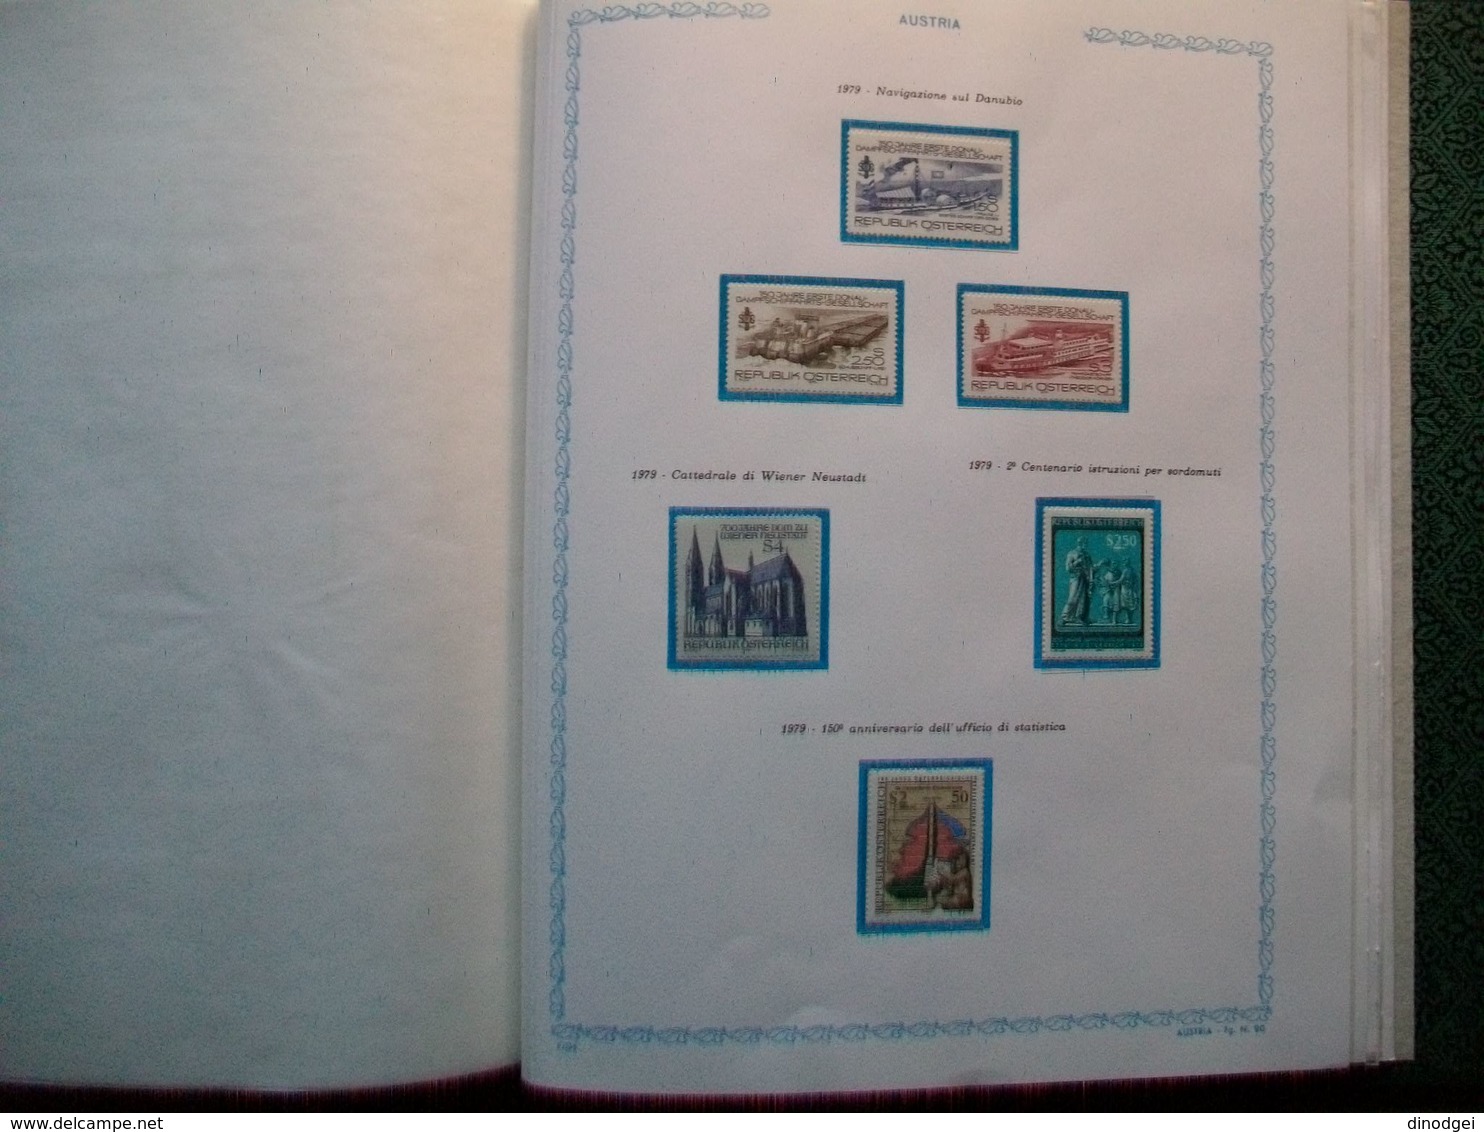 AUSTRIA - elegante collezione in album rilegato di valori nuovi MNH . dal 1961 al 1982